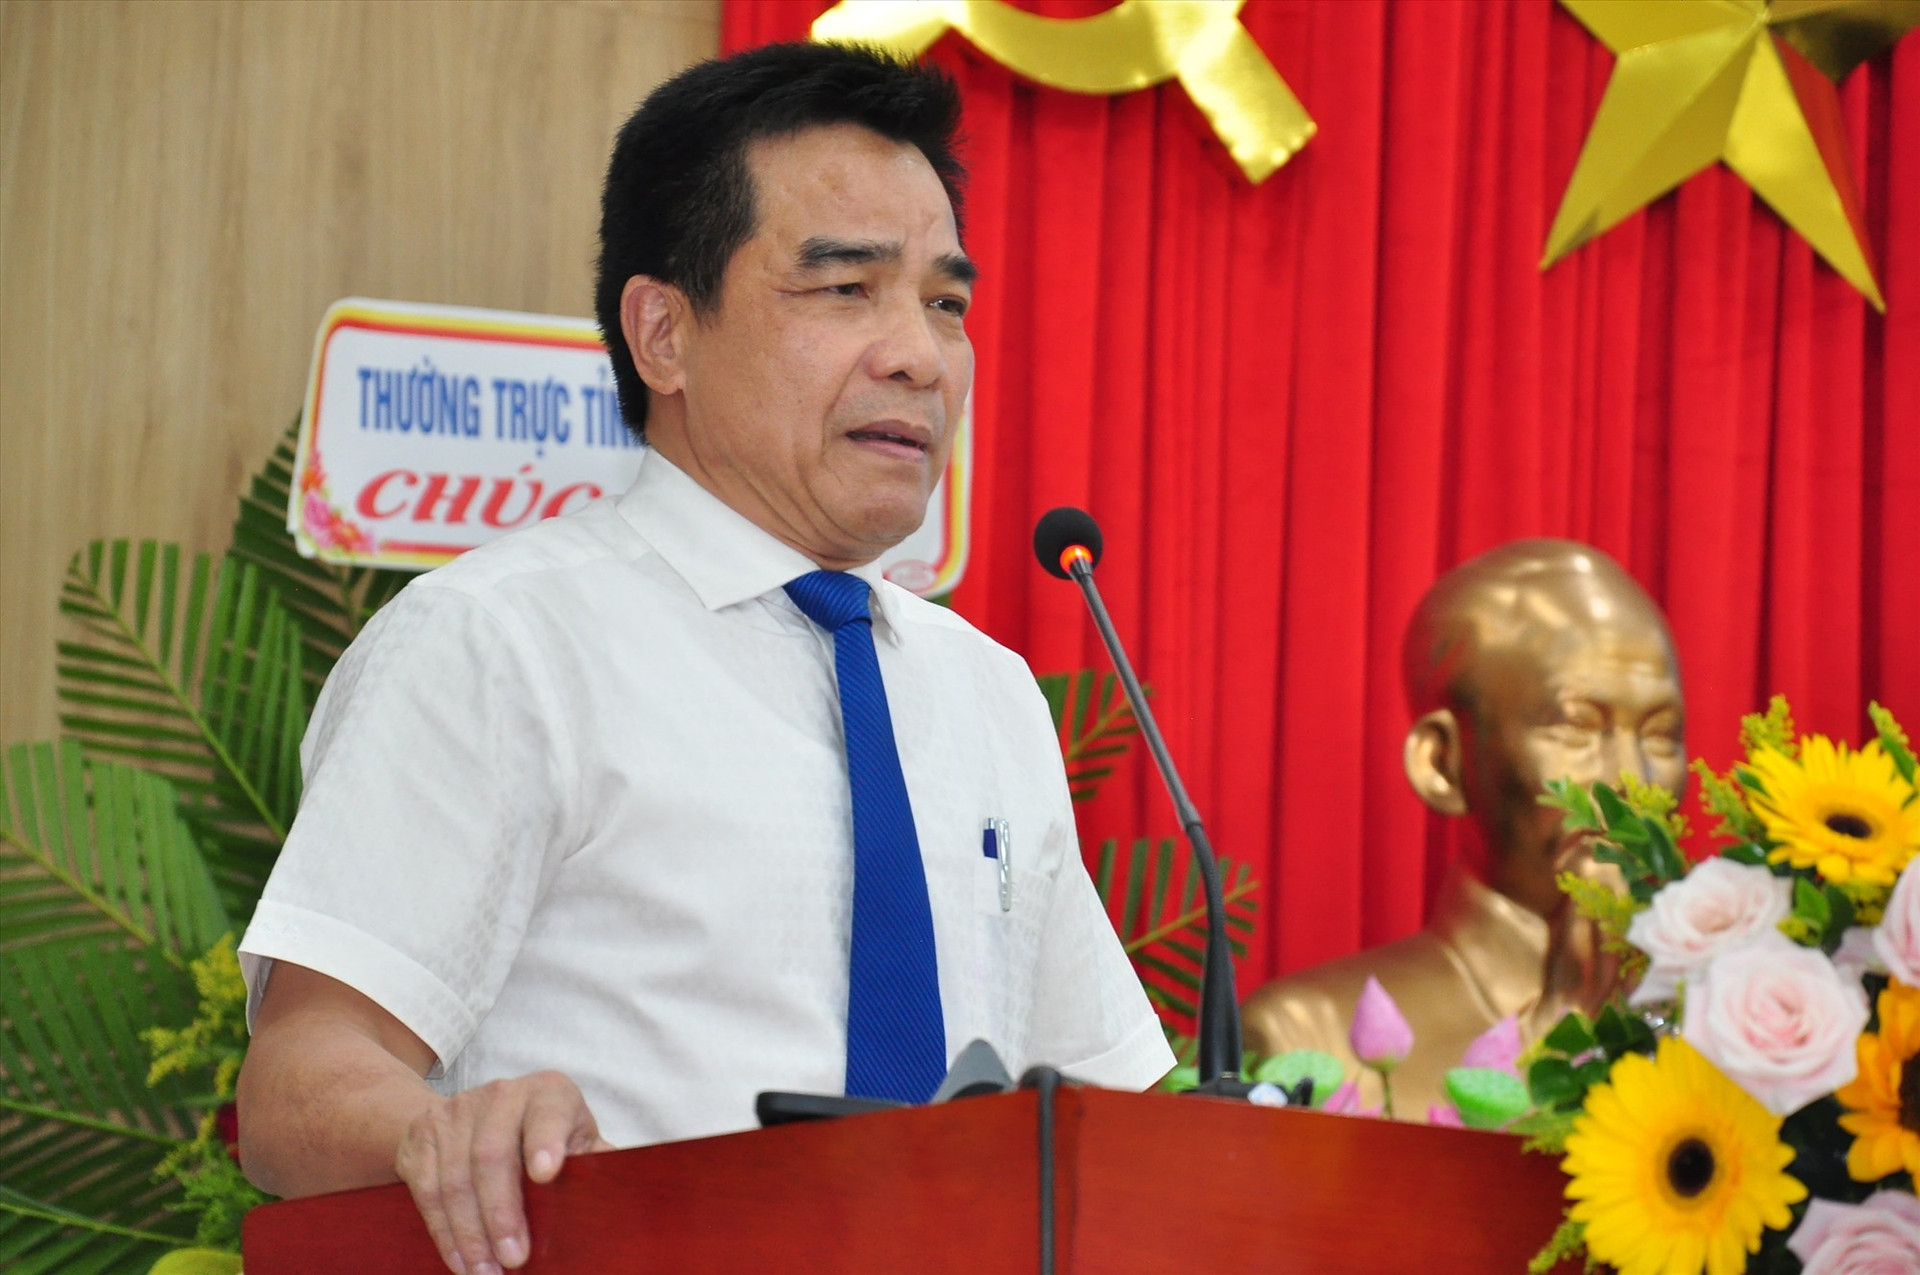 Phó Bí thư Thường trực Tỉnh ủy Lê Văn Dũng phát biểu tại buổi lễ kỷ niệm sáng nay